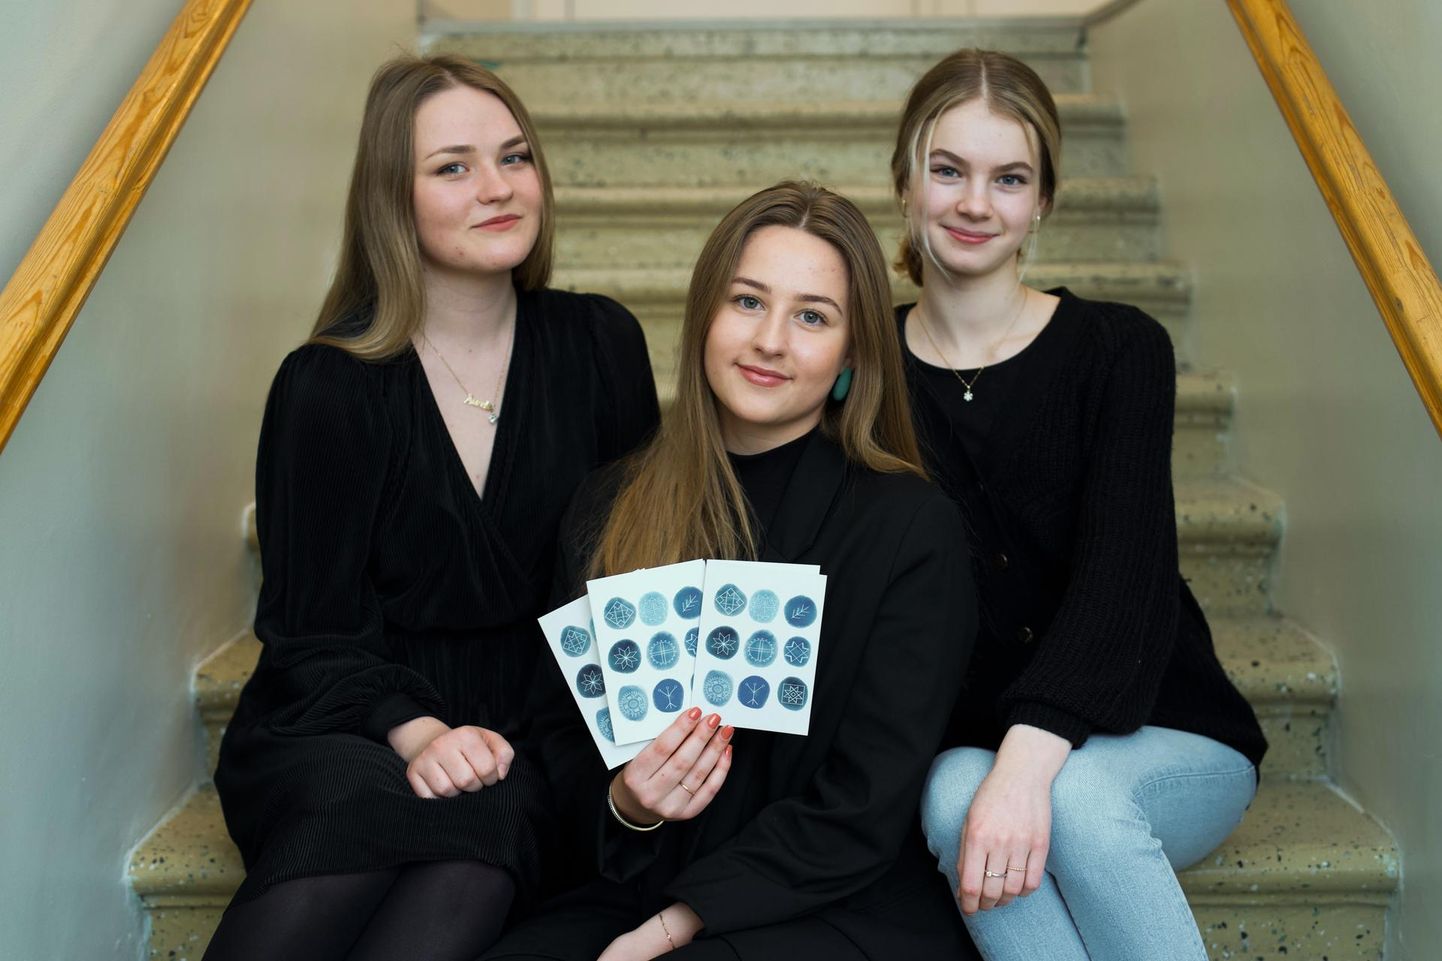 Õpilasfirma Insolito tiimi kuuluvad Aurelia Pärtelson (vasakul), Triinu Veider ja Minni Toom.